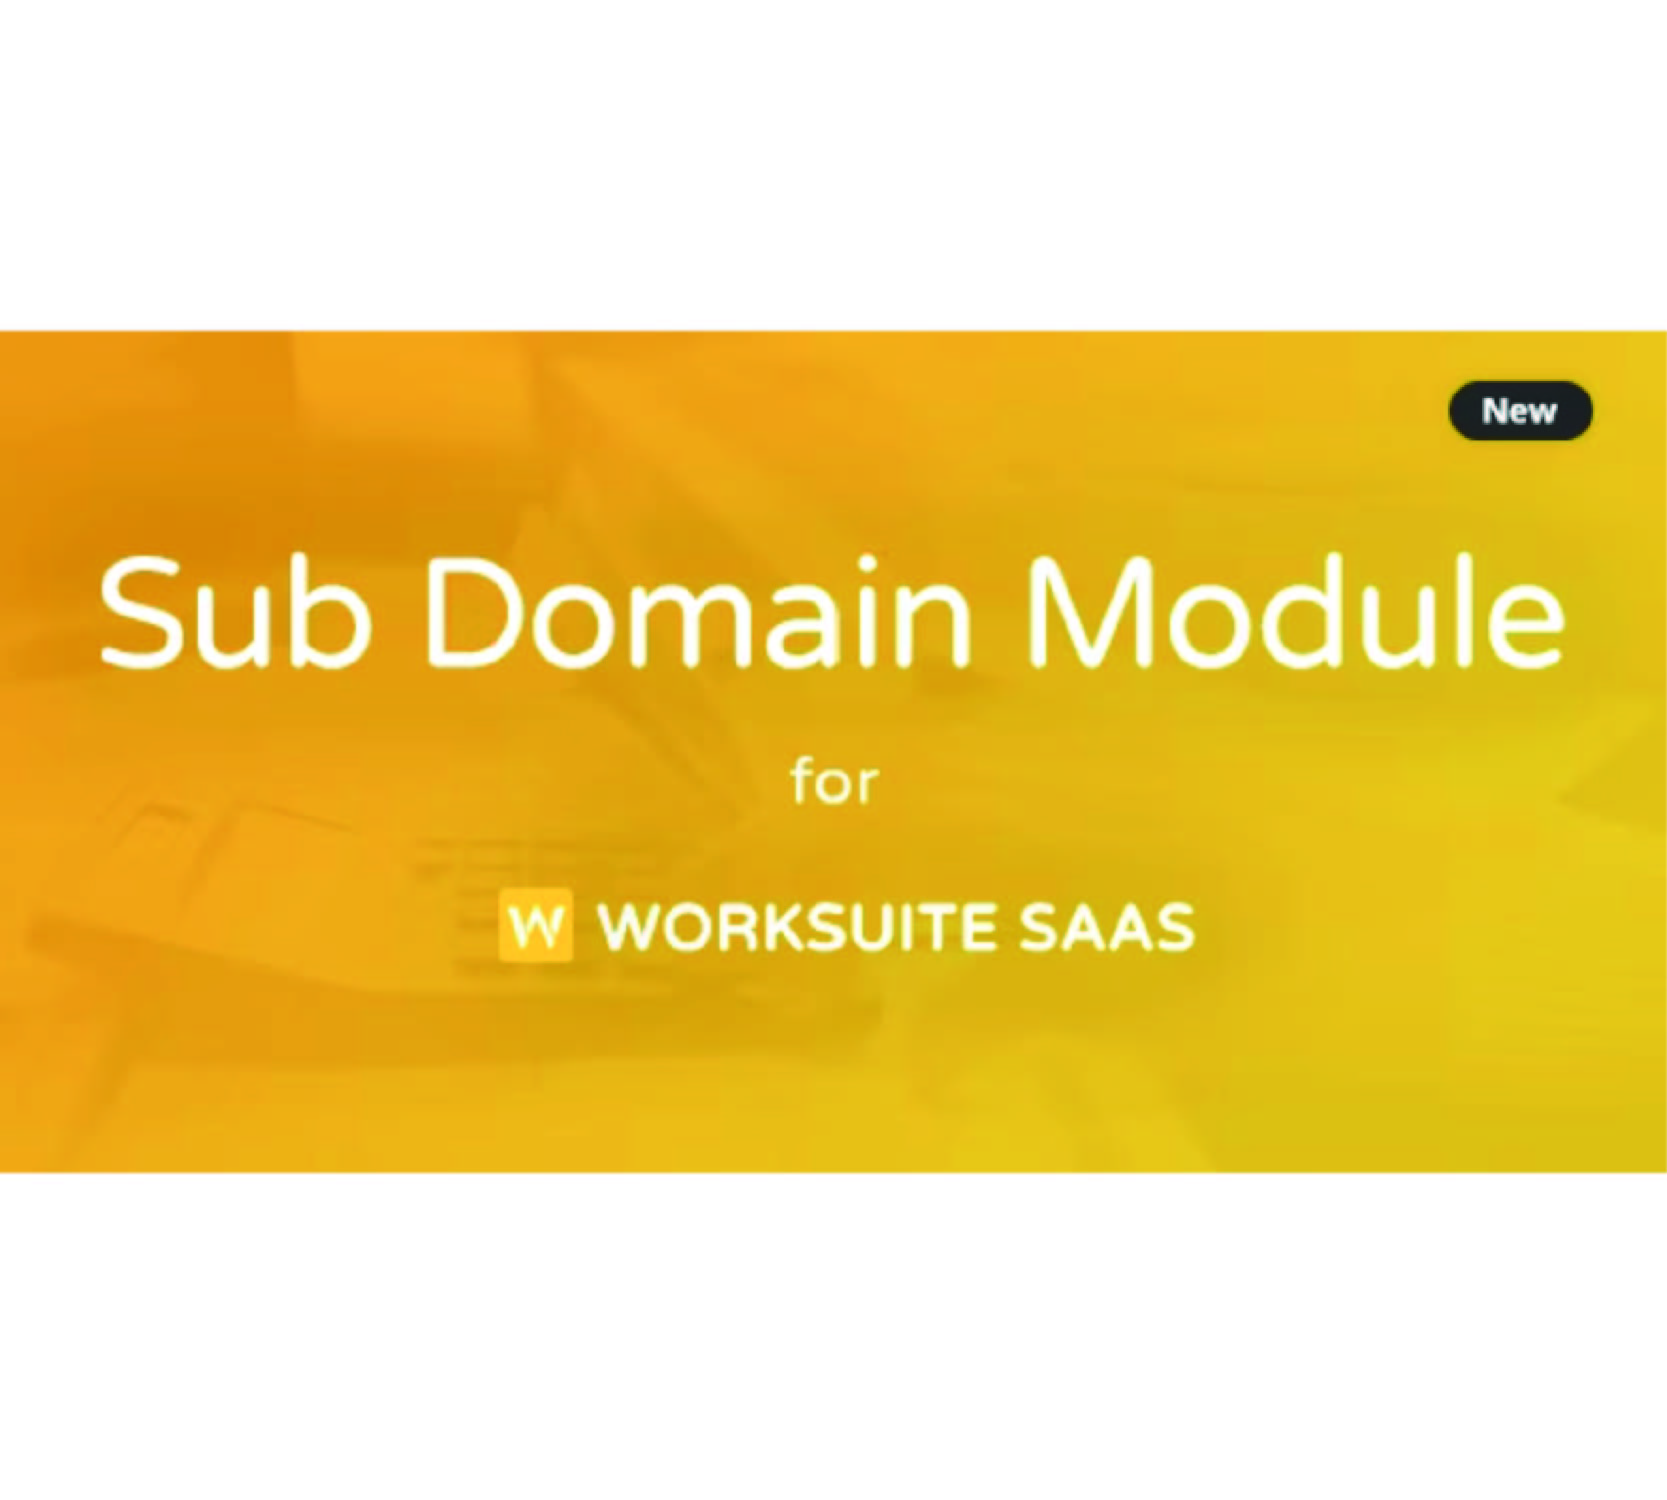 Worksuite SAAS 的子域模块